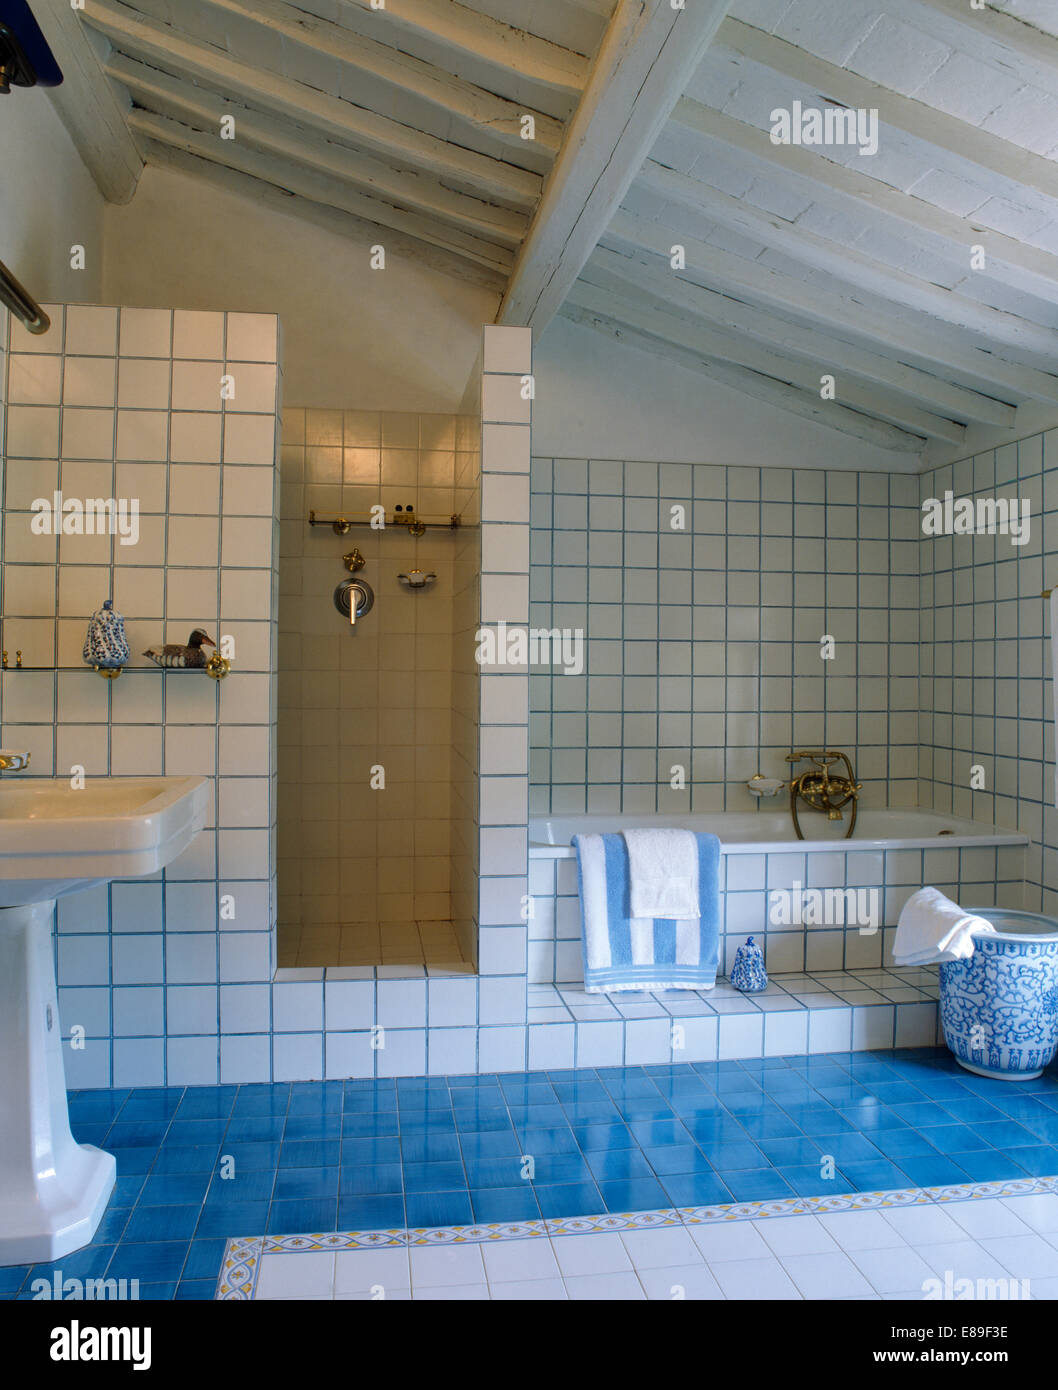 Bleu aigue-marine moderne carrelage dans salle de bains avec carrelage blanc blanc Toscane poutres apparentes peintes Banque D'Images